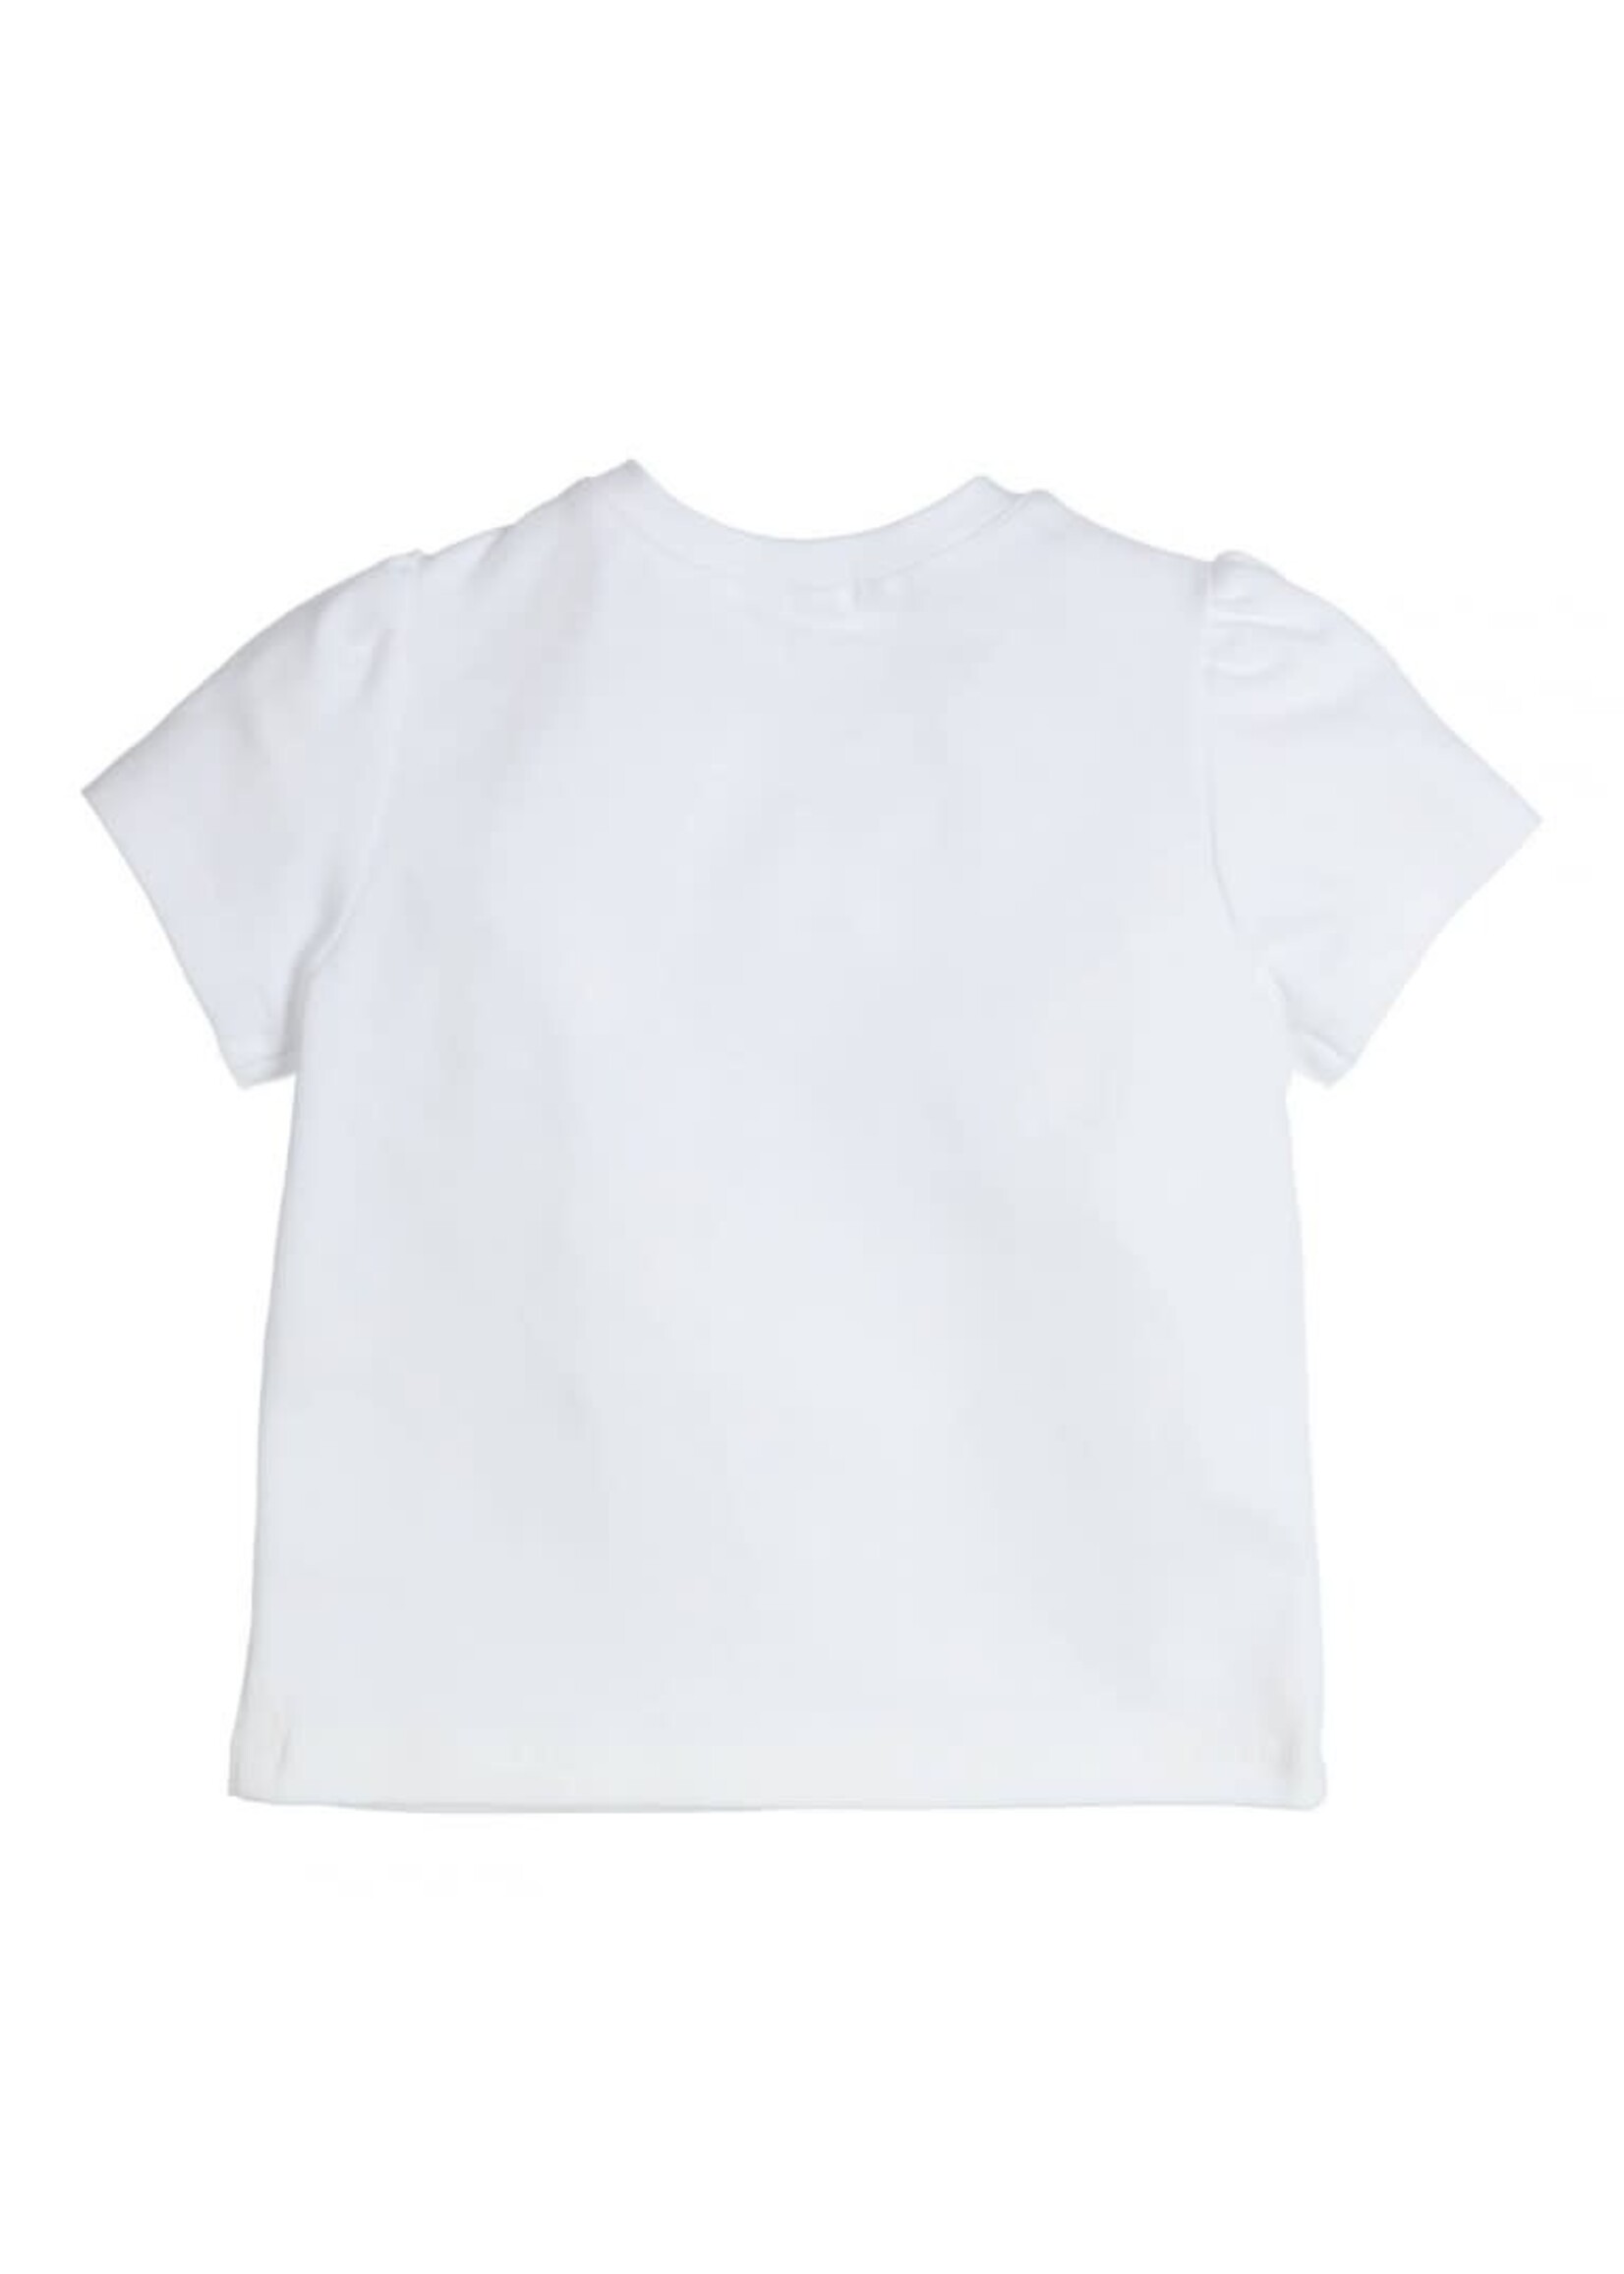 GYMP GYMP T-shirt Aerobic White 353-4232-10